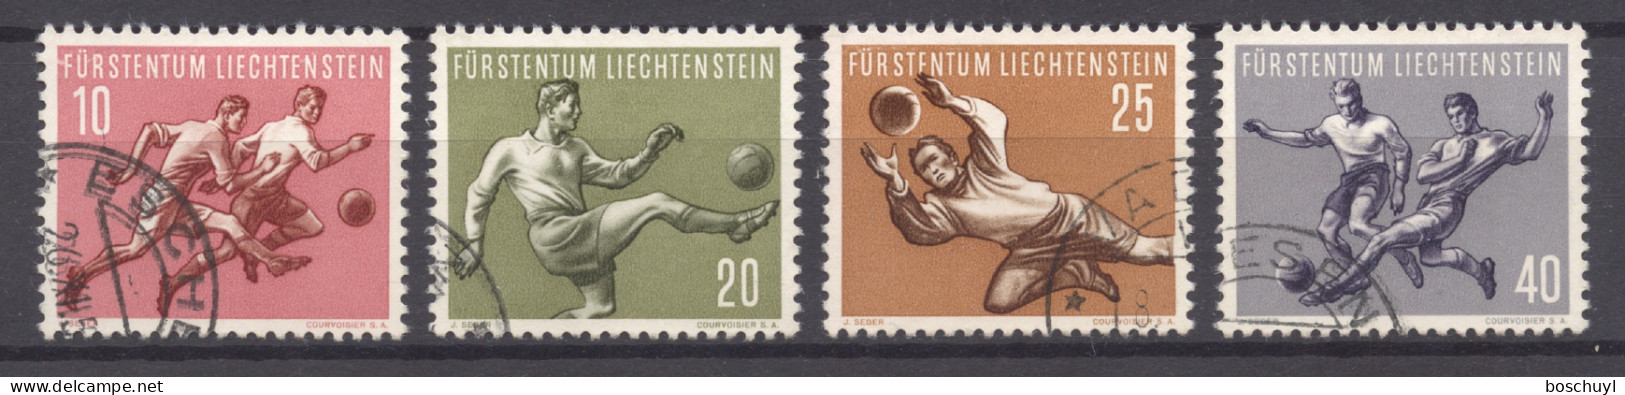 Liechtenstein, 1954, Soccer World Cup Switzerland, Football, Sports, Used, Michel 322-325 - Usati